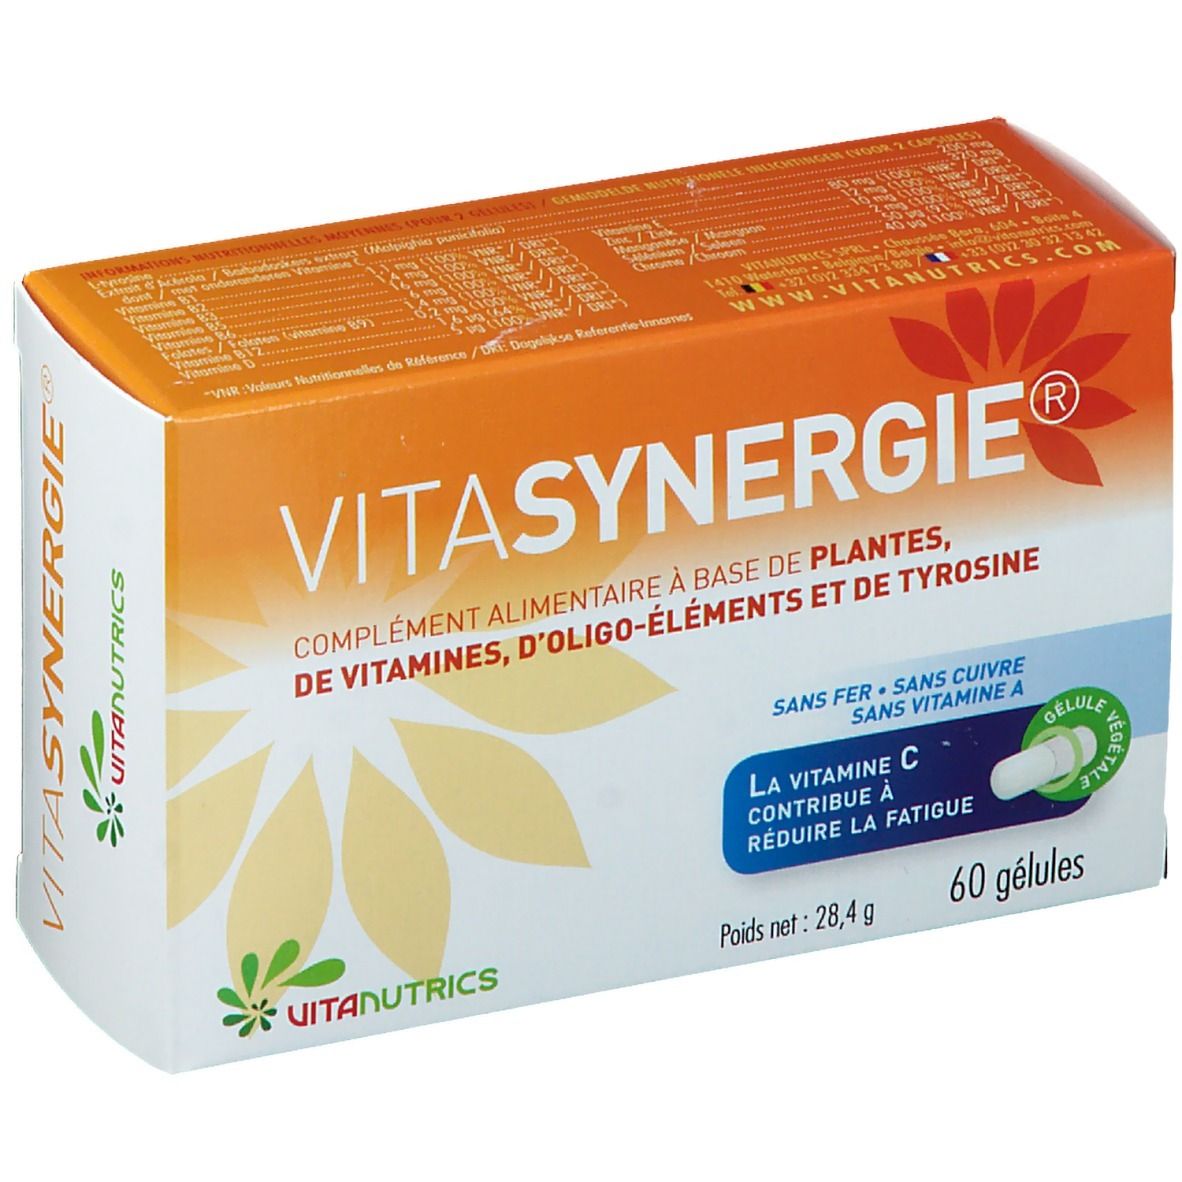 Vitanutrics Vitasynergie®